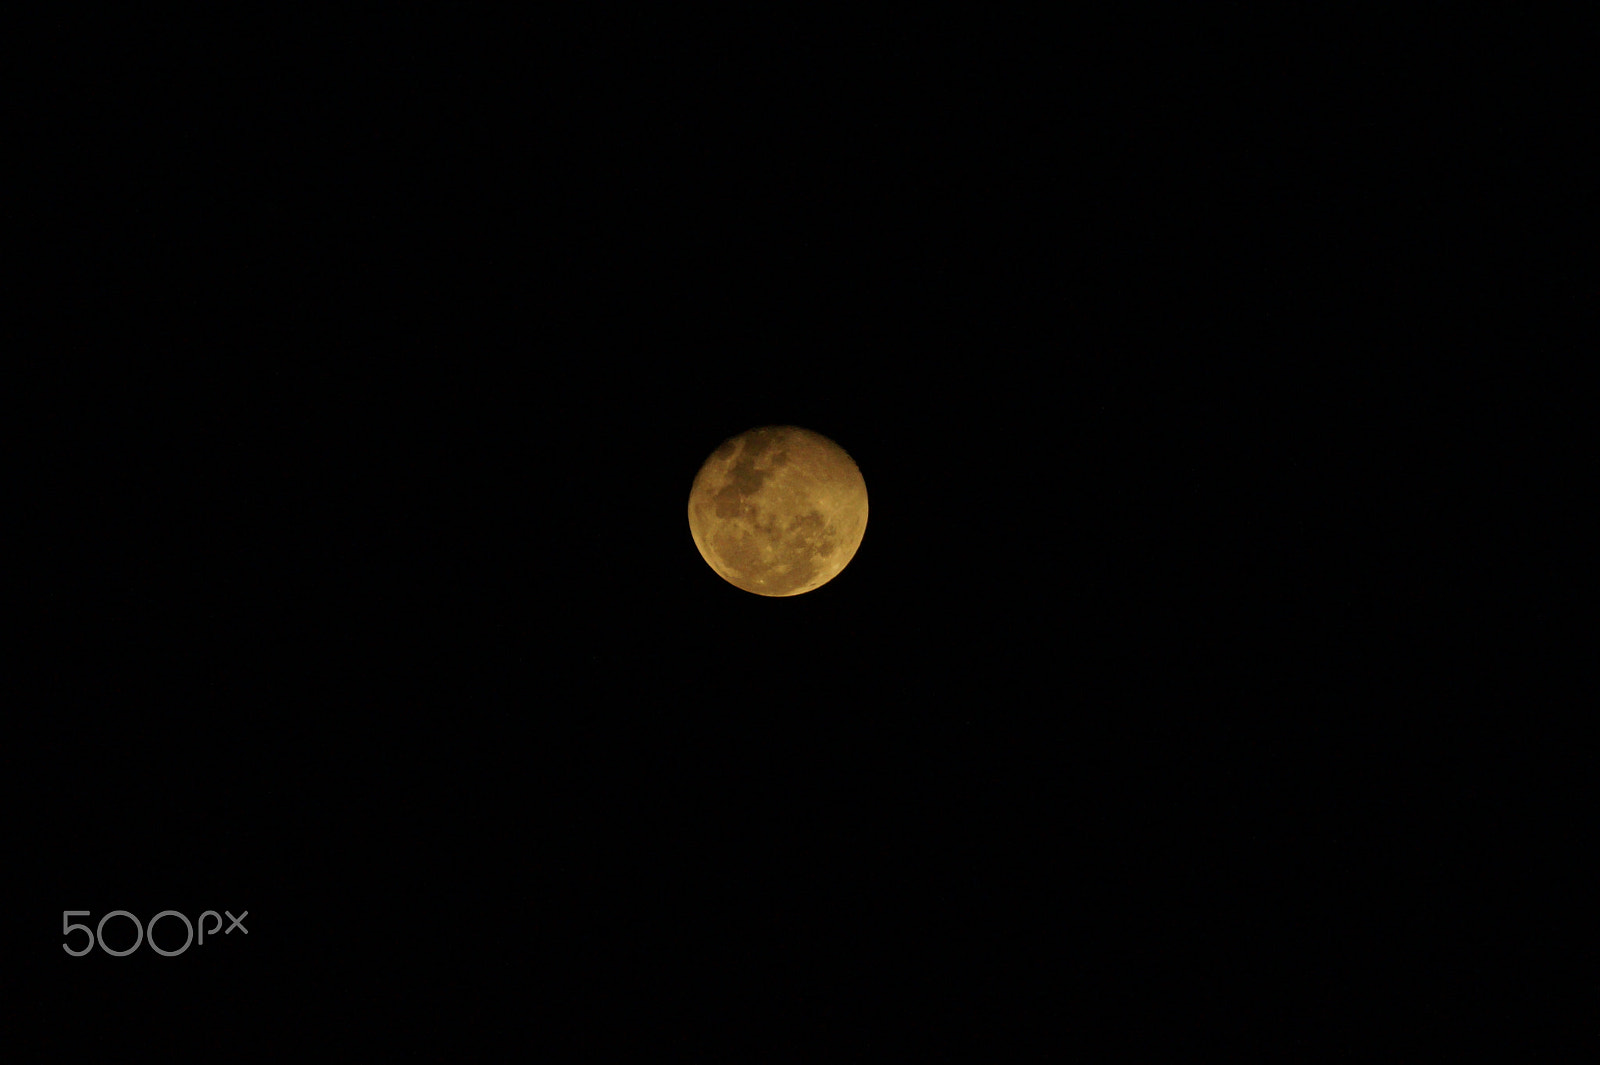 Sony SLT-A58 sample photo. A moon photography